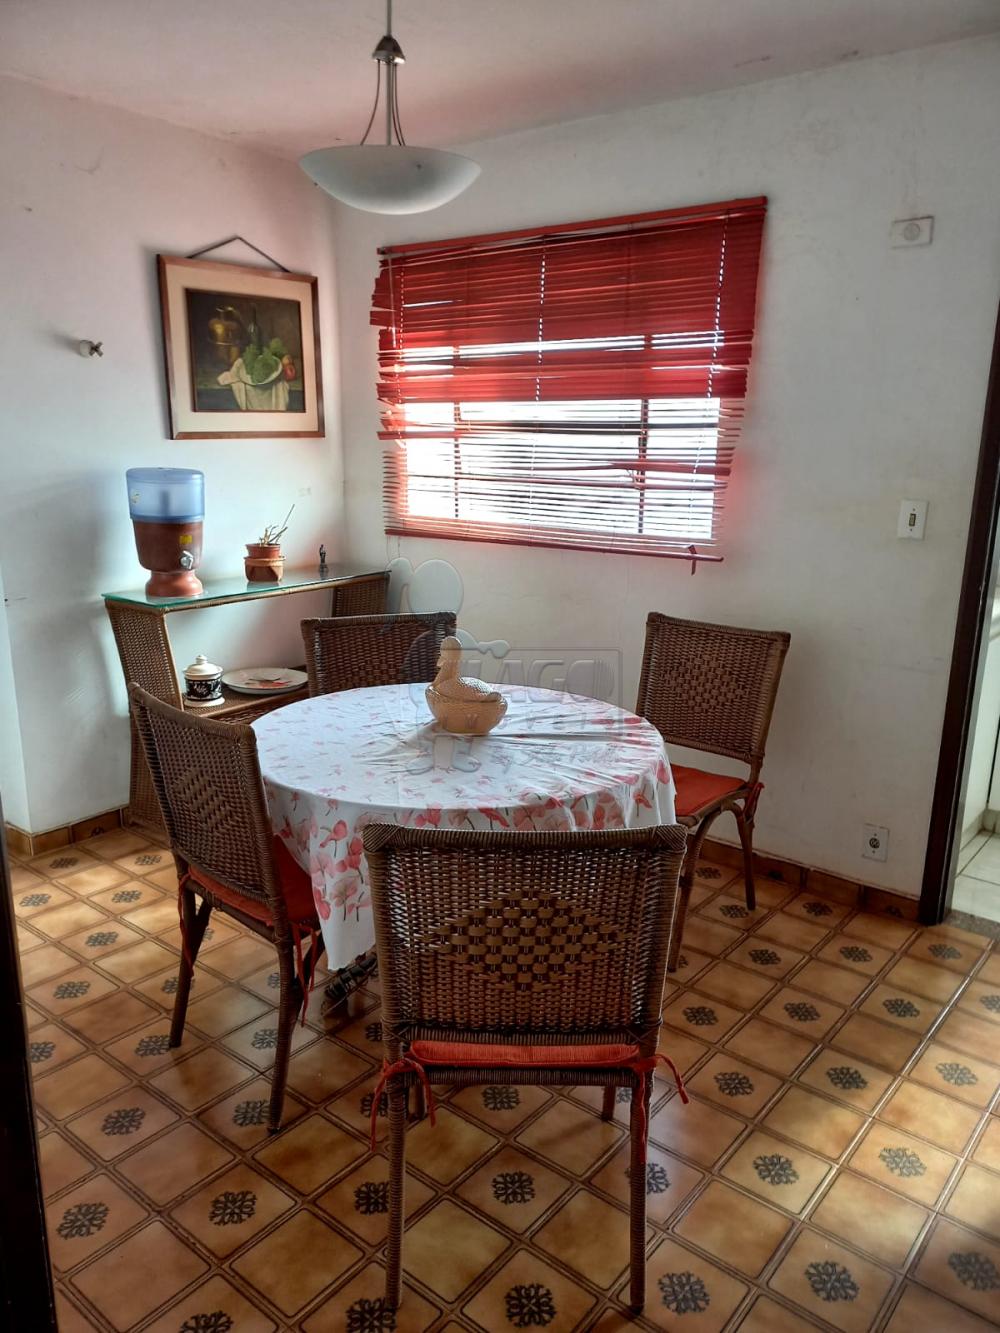 Alugar Apartamento / Padrão em Ribeirão Preto R$ 850,00 - Foto 4